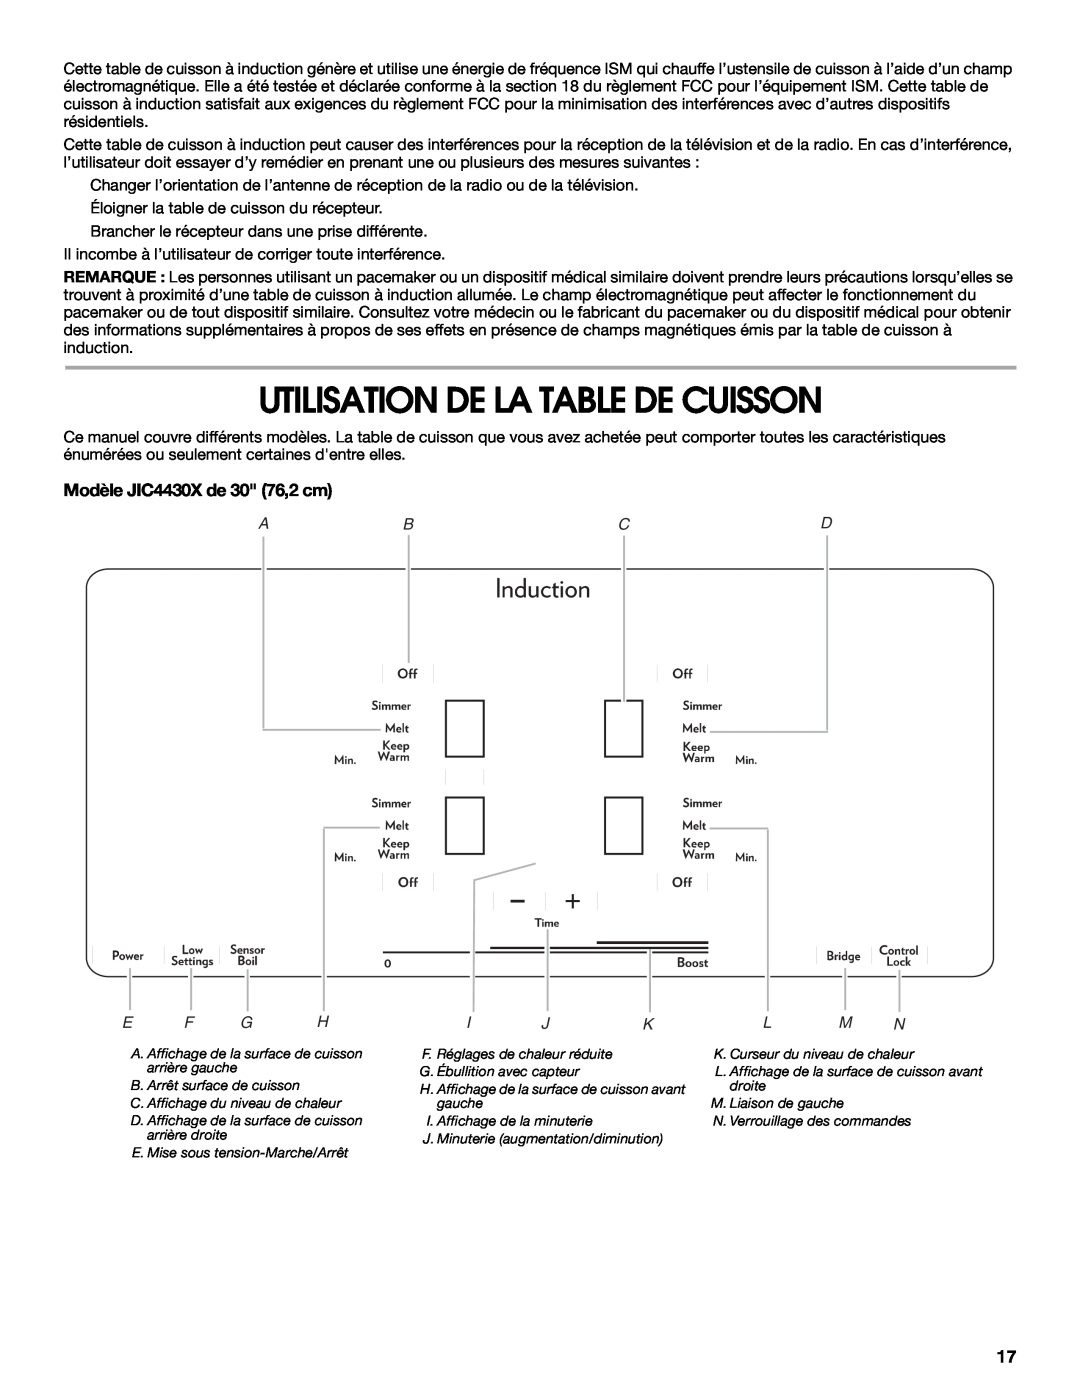 Jenn-Air manual Utilisation De La Table De Cuisson, Modèle JIC4430X de 30 76,2 cm, Abcd 